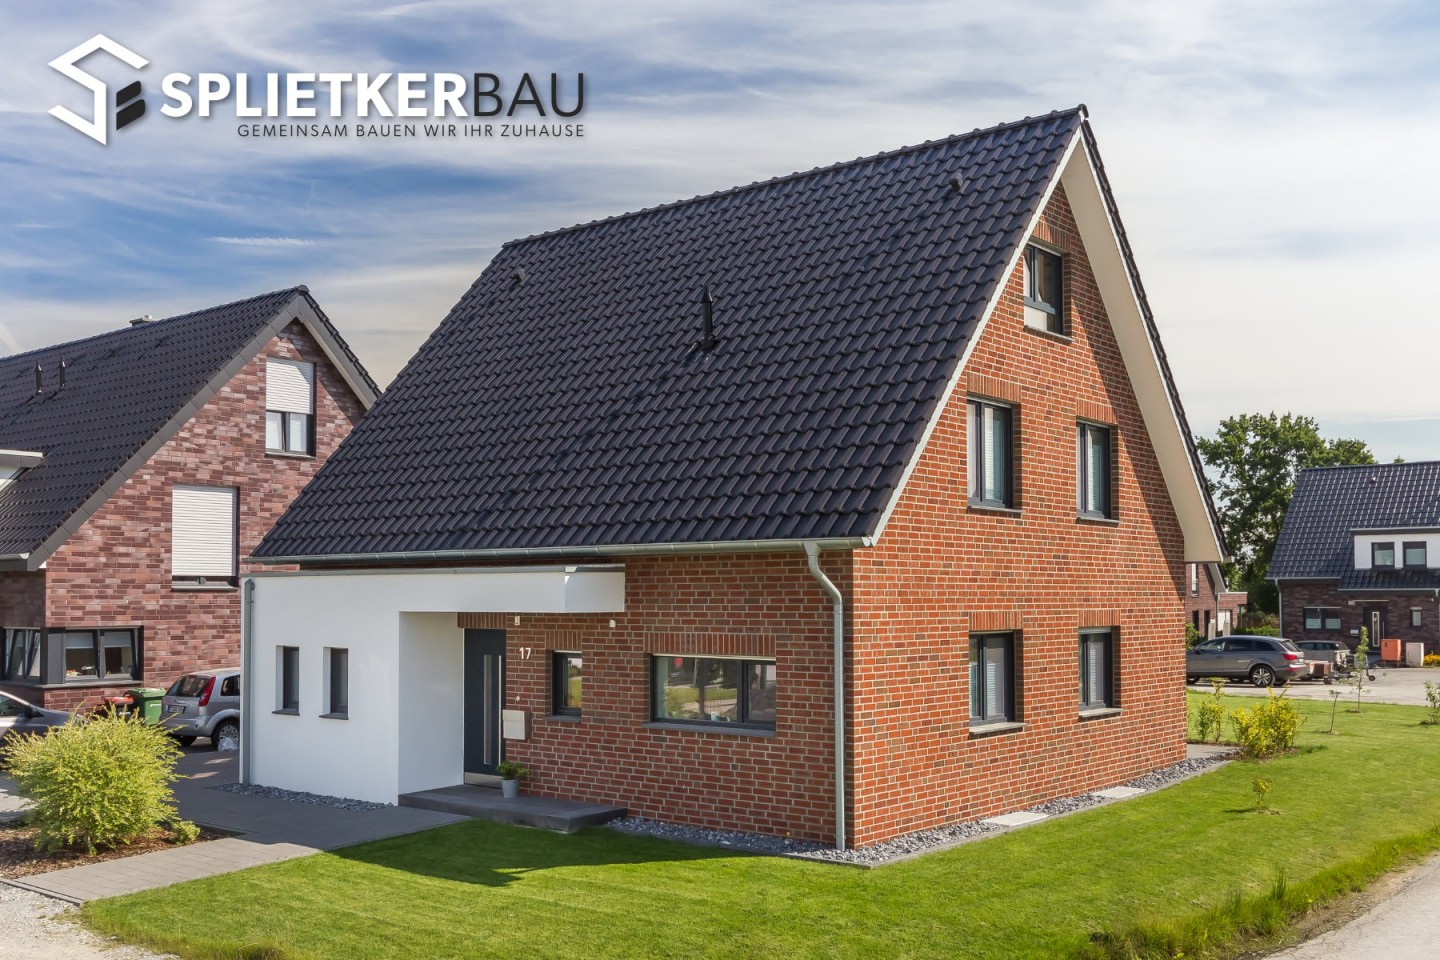 Splietker Bau GmbH&Co. KG